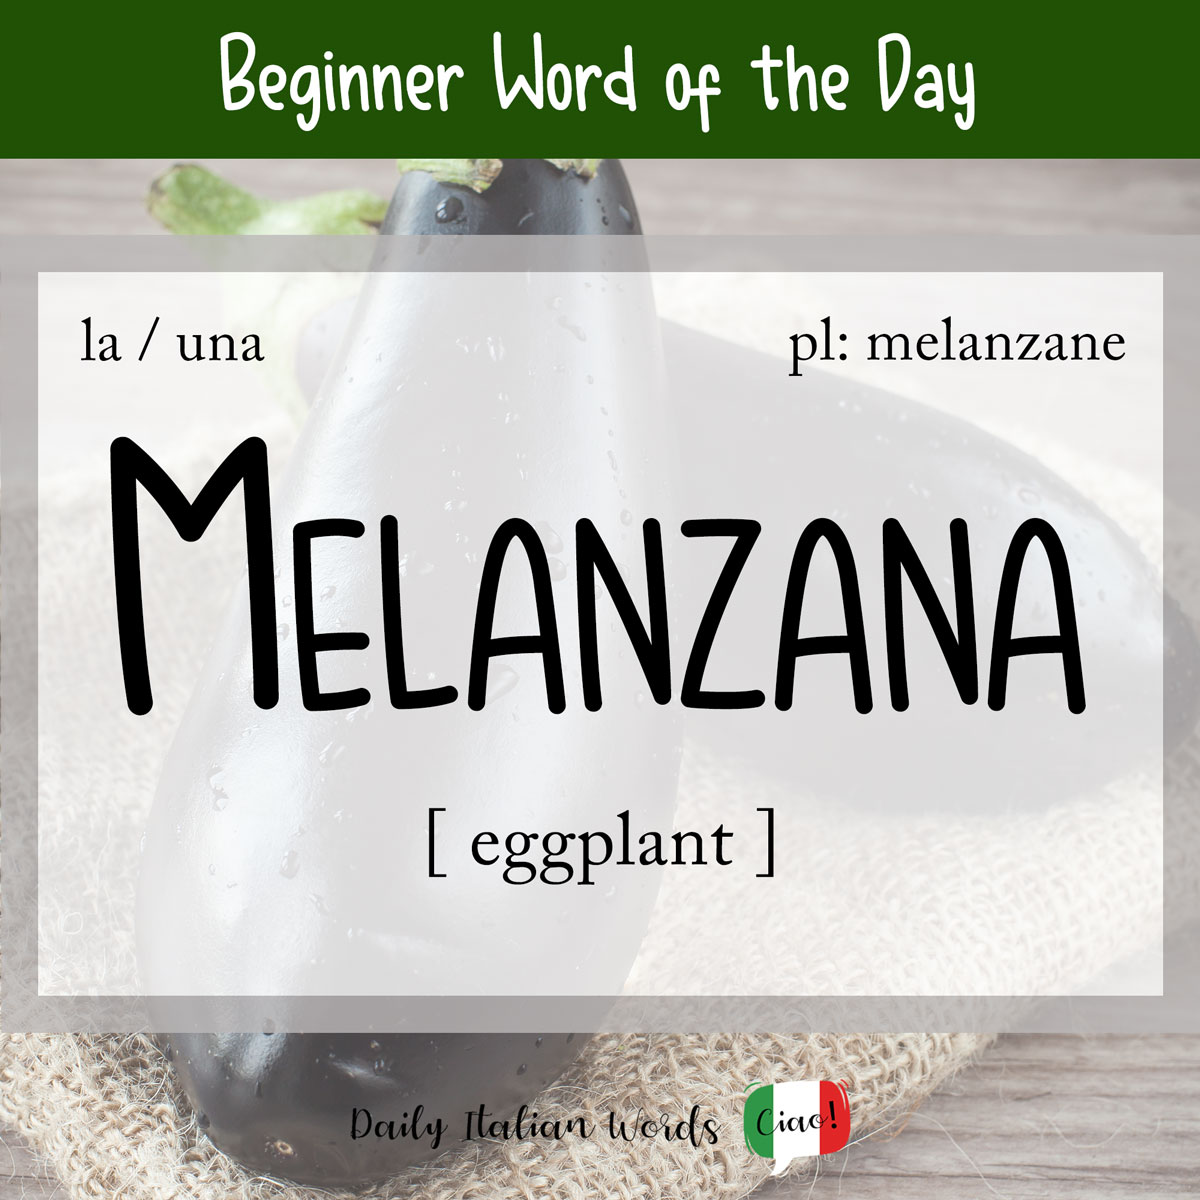 italian word of the day melanzana